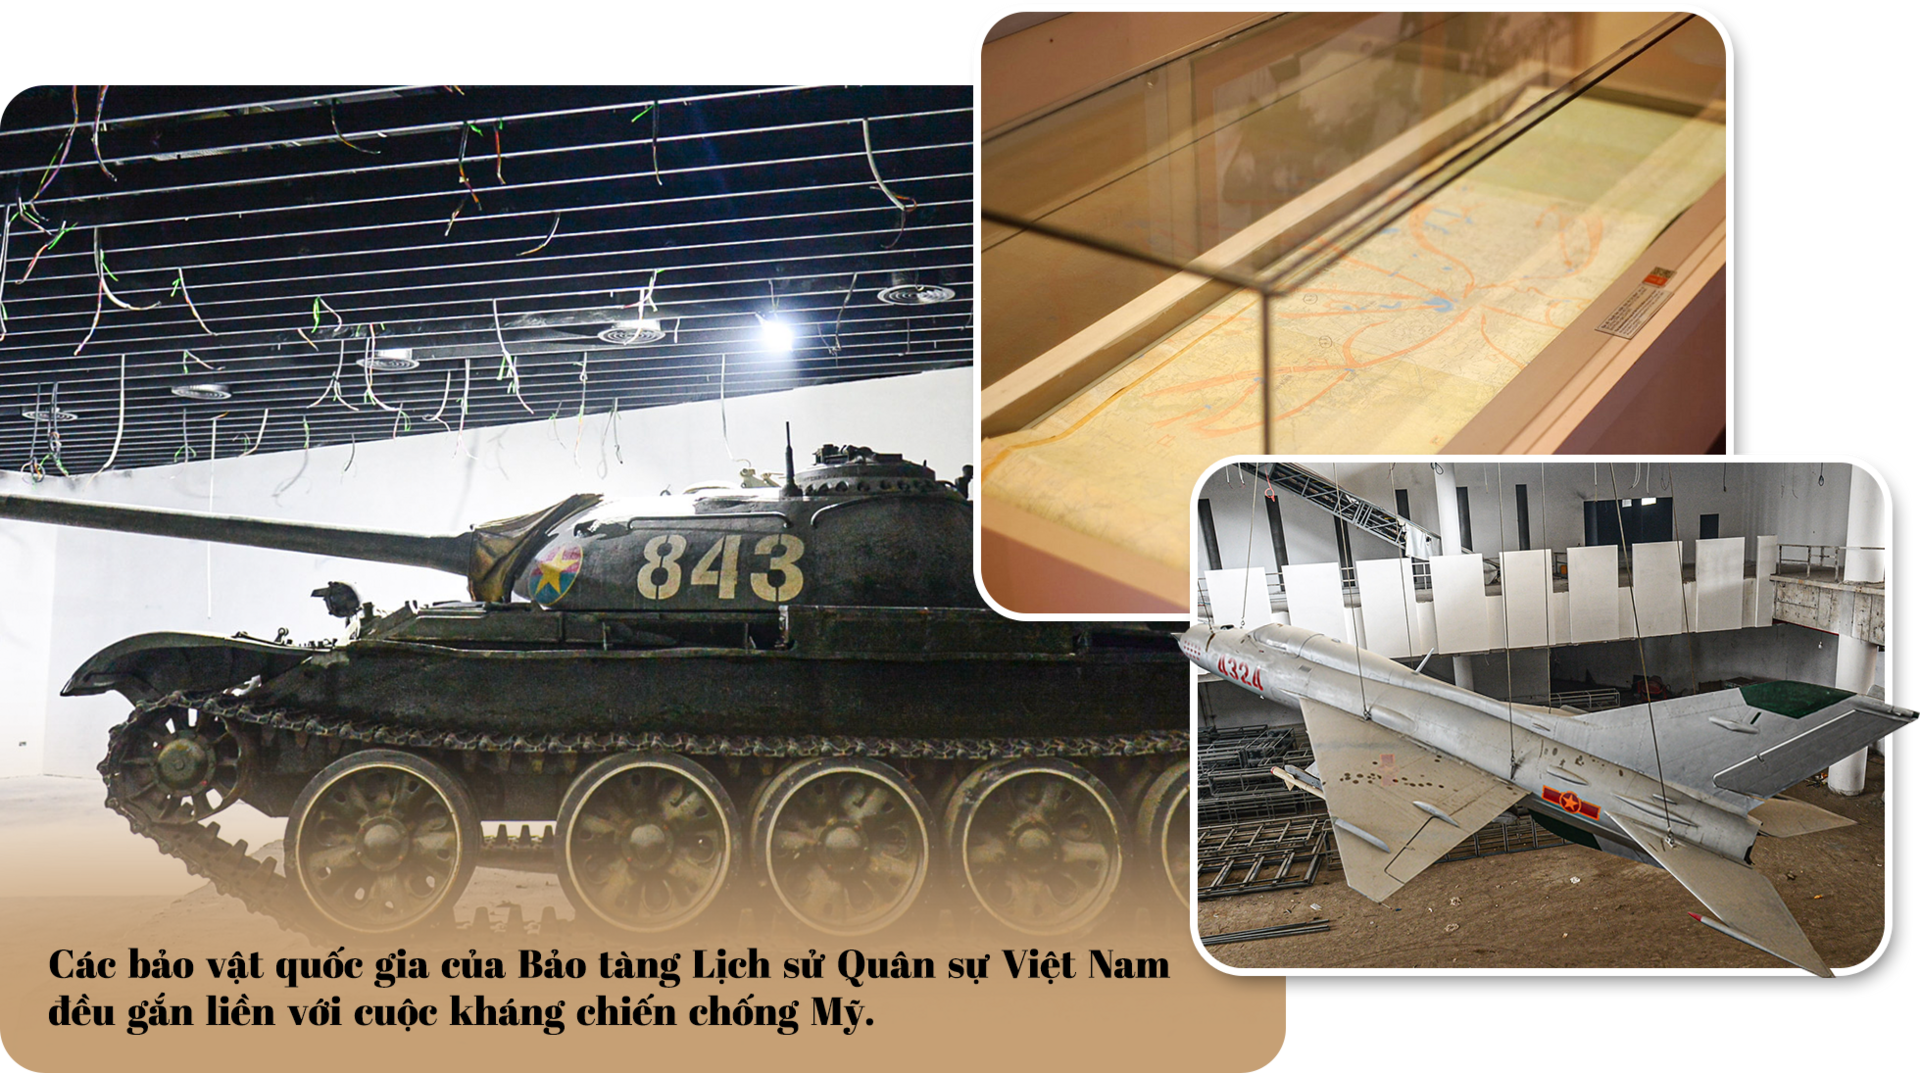 Điều đặc biệt về 4 bảo vật quốc gia trong bảo tàng quân sự lớn nhất Việt Nam - 2